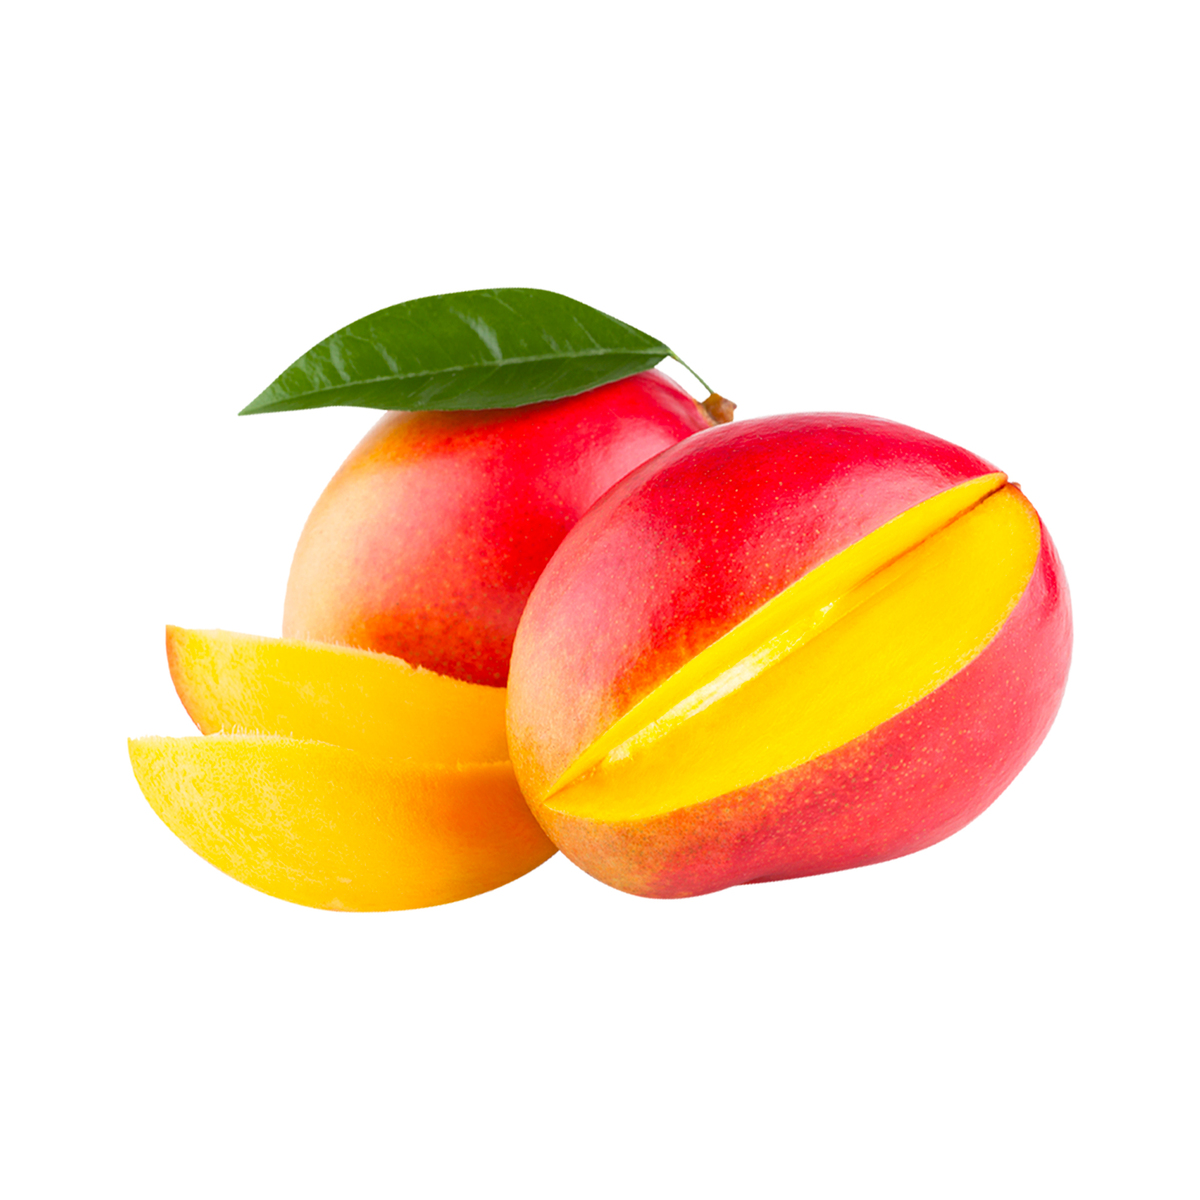 Buy Sindooram Mango India 1 kg Online at Best Price | Mangoes | Lulu UAE in Kuwait